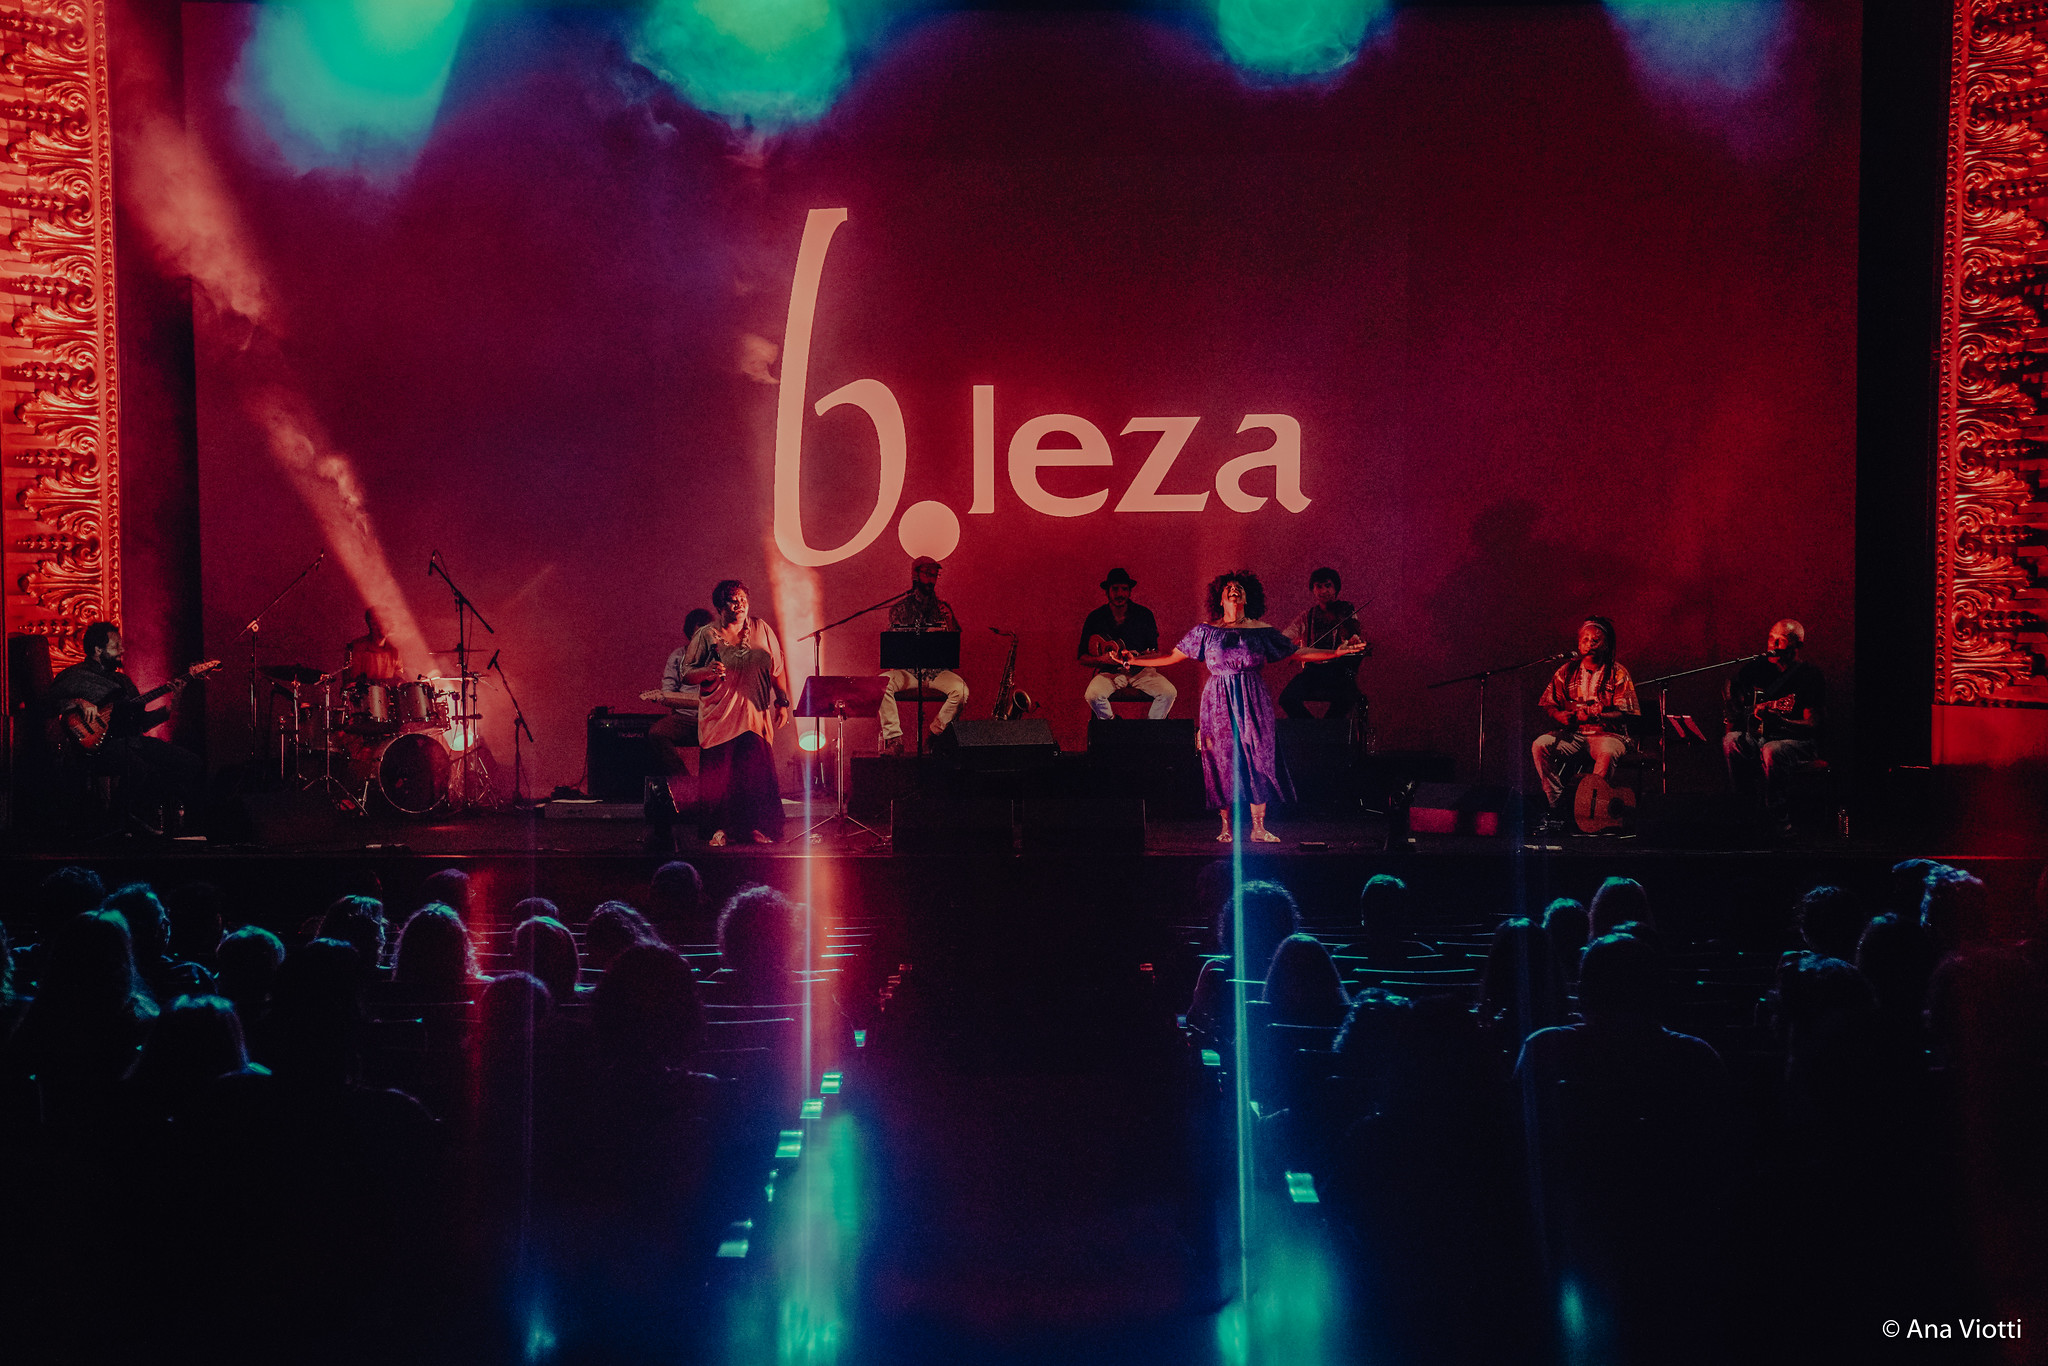 B.Leza apresenta Baile Sentado | Takeover #1 – Musicbox no São Luiz